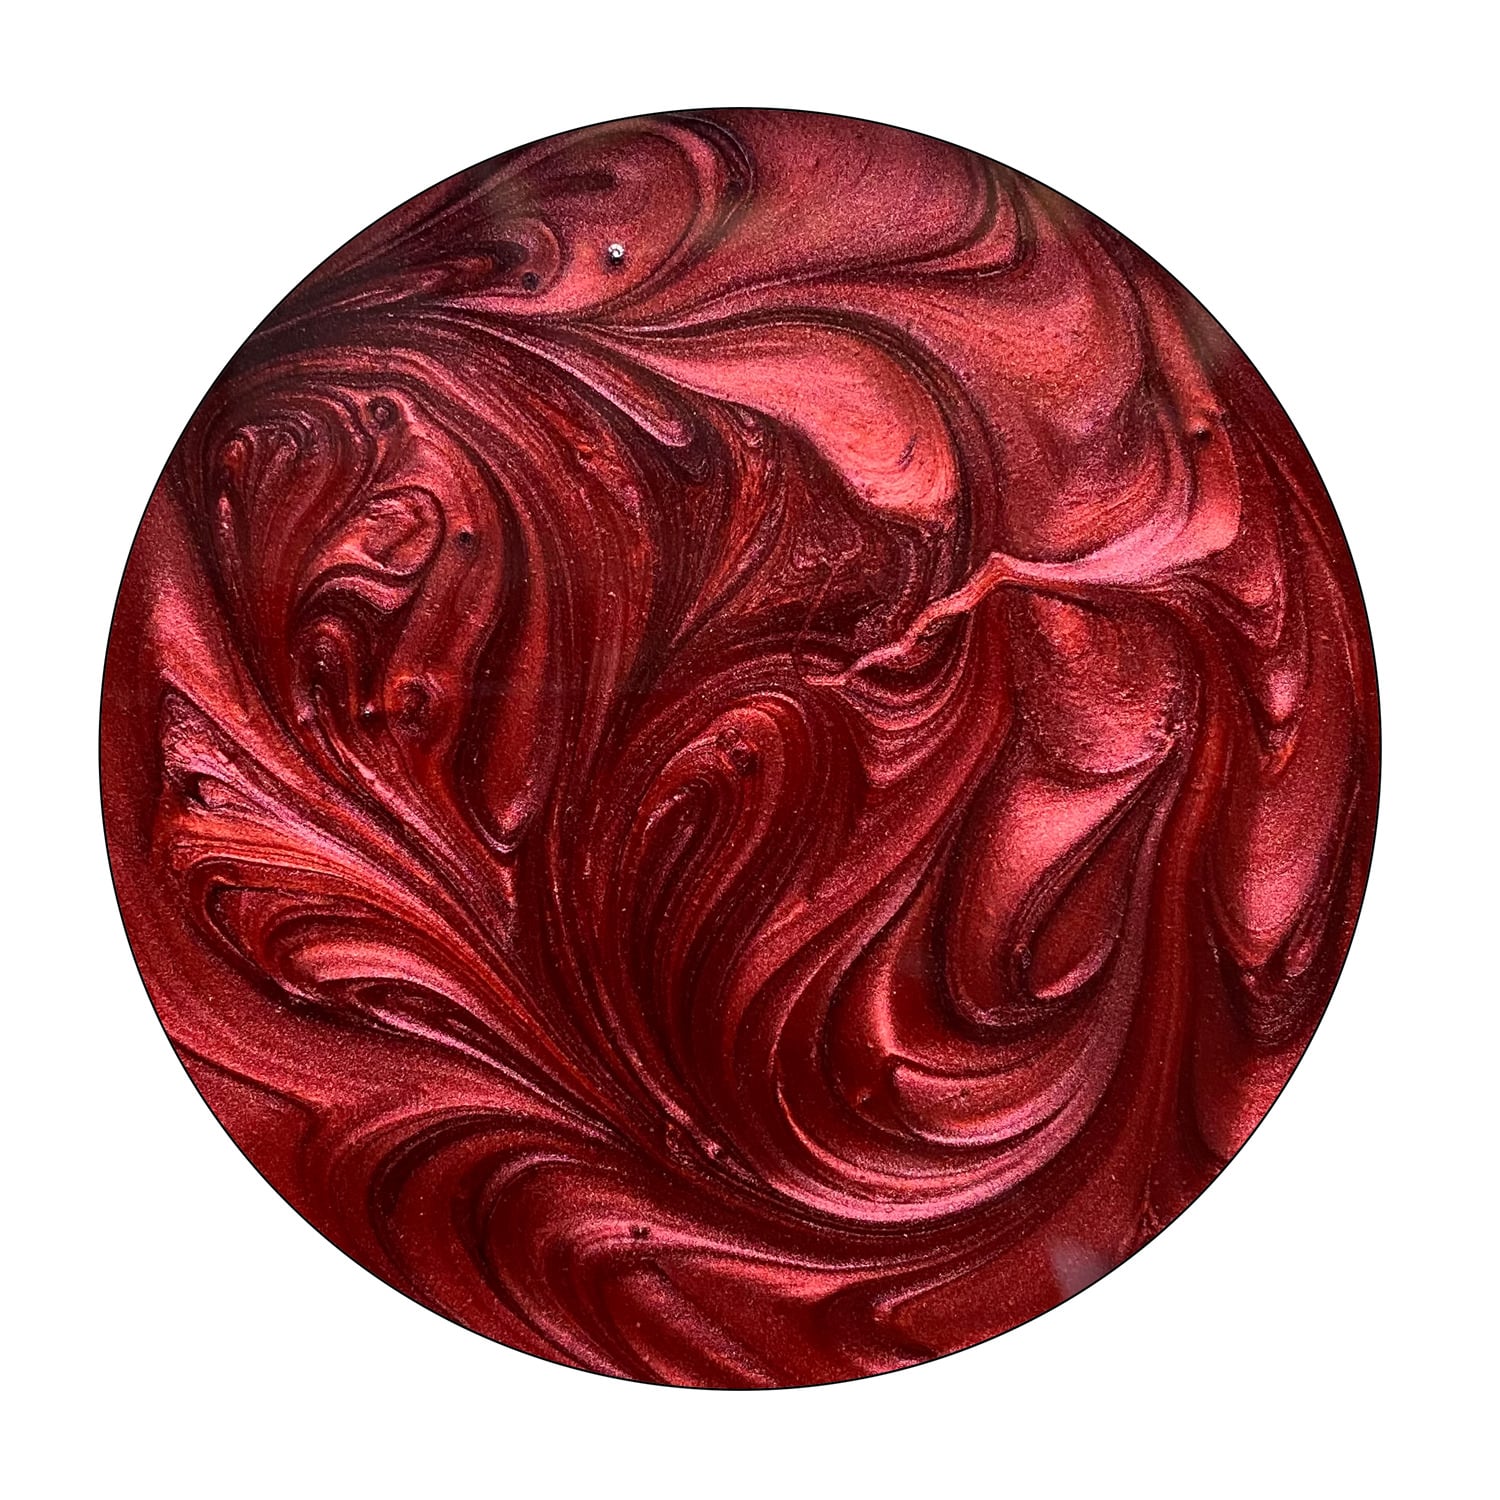 Pigmento mica metálica Wine Red en 50ml y 150ml para Resinas Epoxi – Bricolaje, Joyería, Mesas de Resina y Creaciones Artísticas